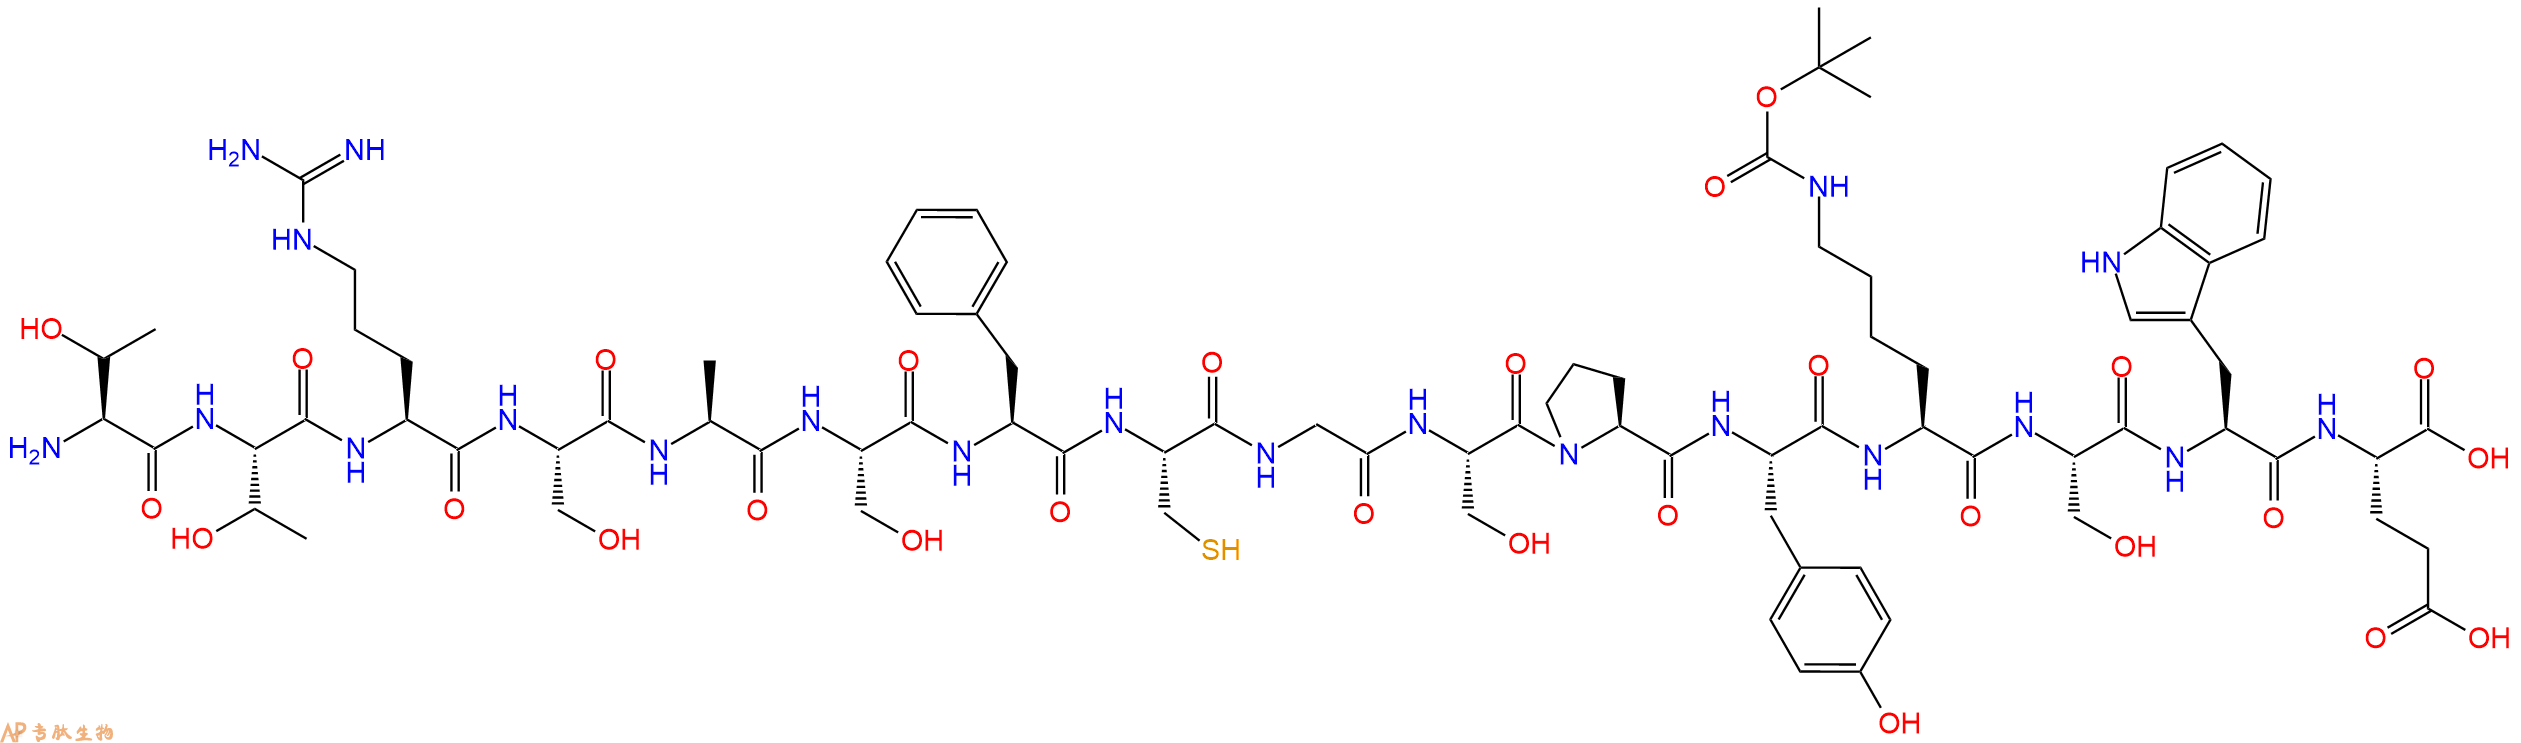 专肽生物产品H2N-Thr-Thr-Arg-Ser-Ala-Ser-Phe-Cys-Gly-Ser-Pro-Ty